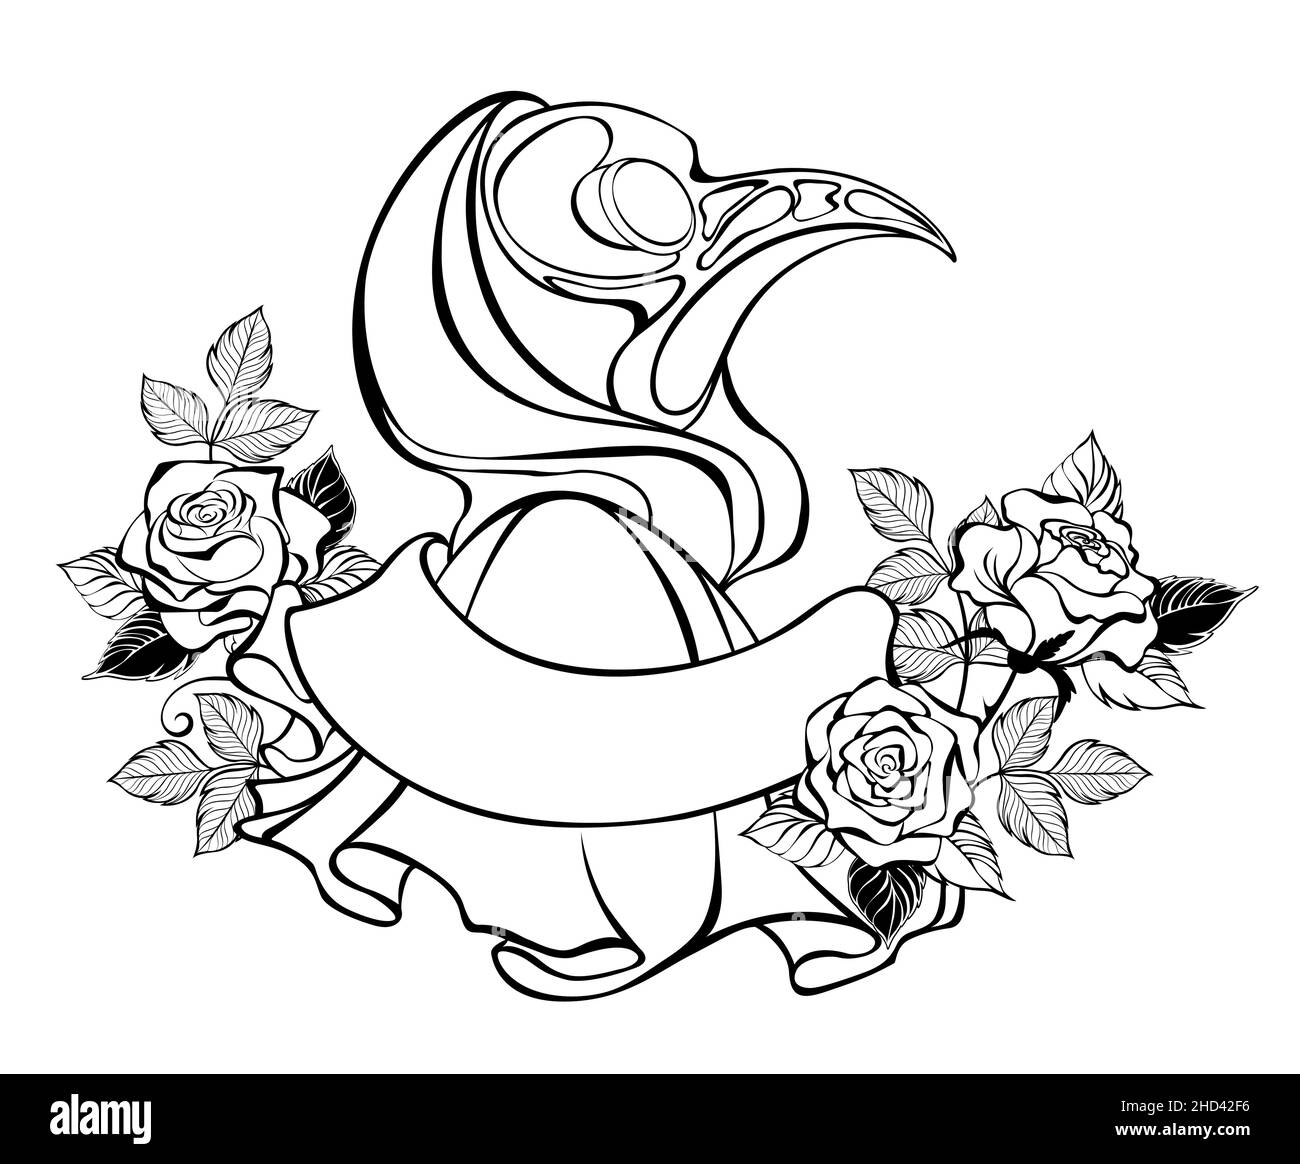 Kontur, Kunstzeichnung von Pestarzt mit Mütze mit blühenden Rosen, auf weißem Hintergrund. Design an halloween. Stock Vektor